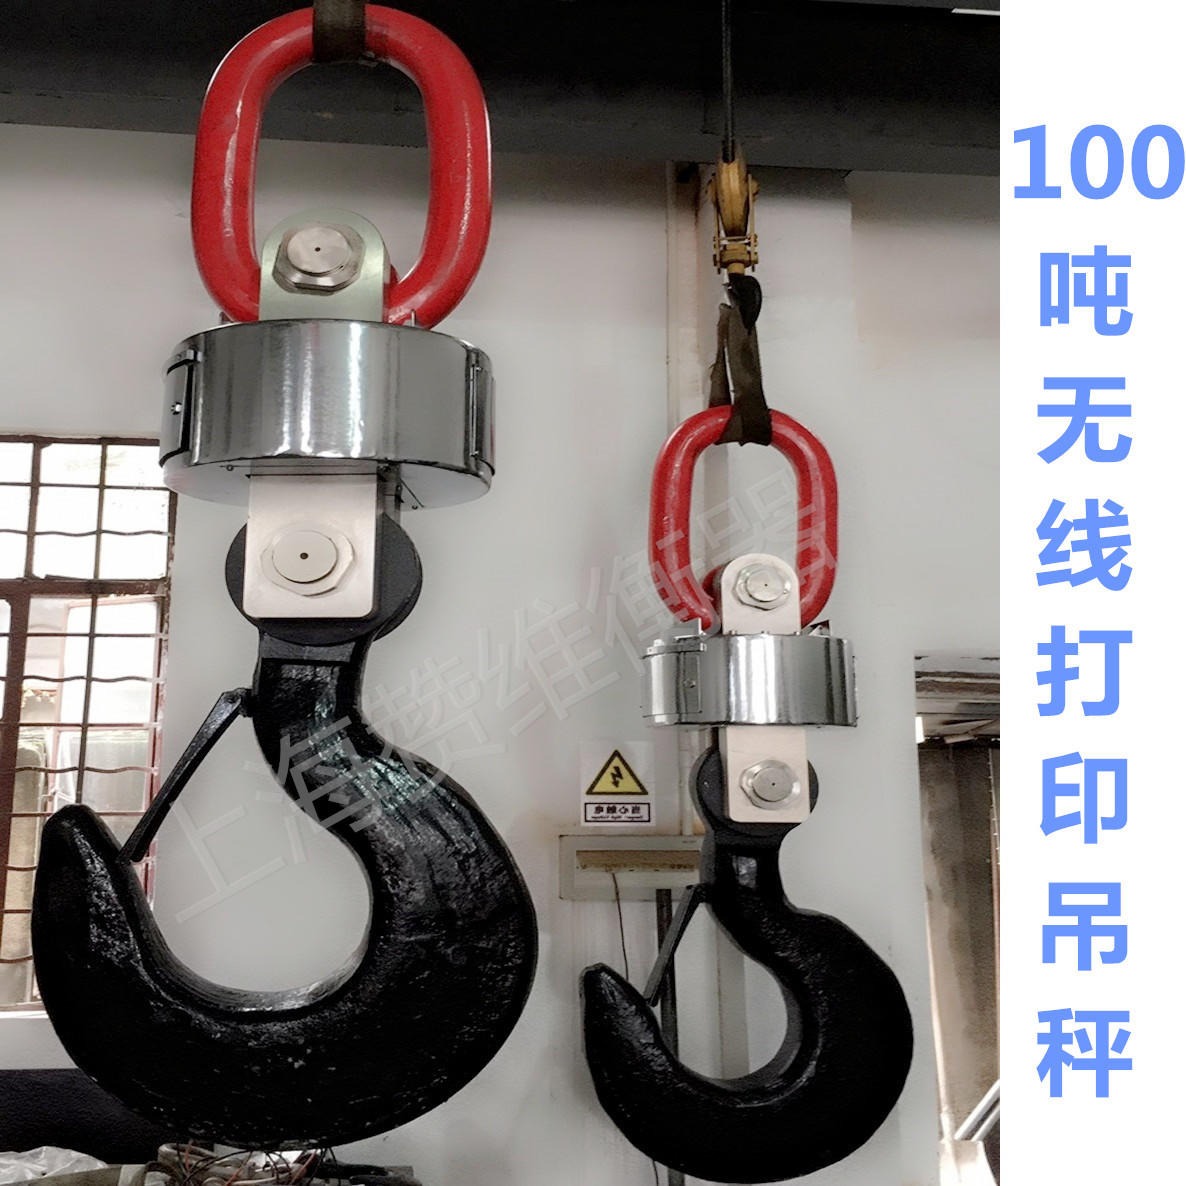 赞维厂家直销100吨无线电子吊秤 远距离传输 打印型吊钩称 10T20t30t50吨80T量程可选图片